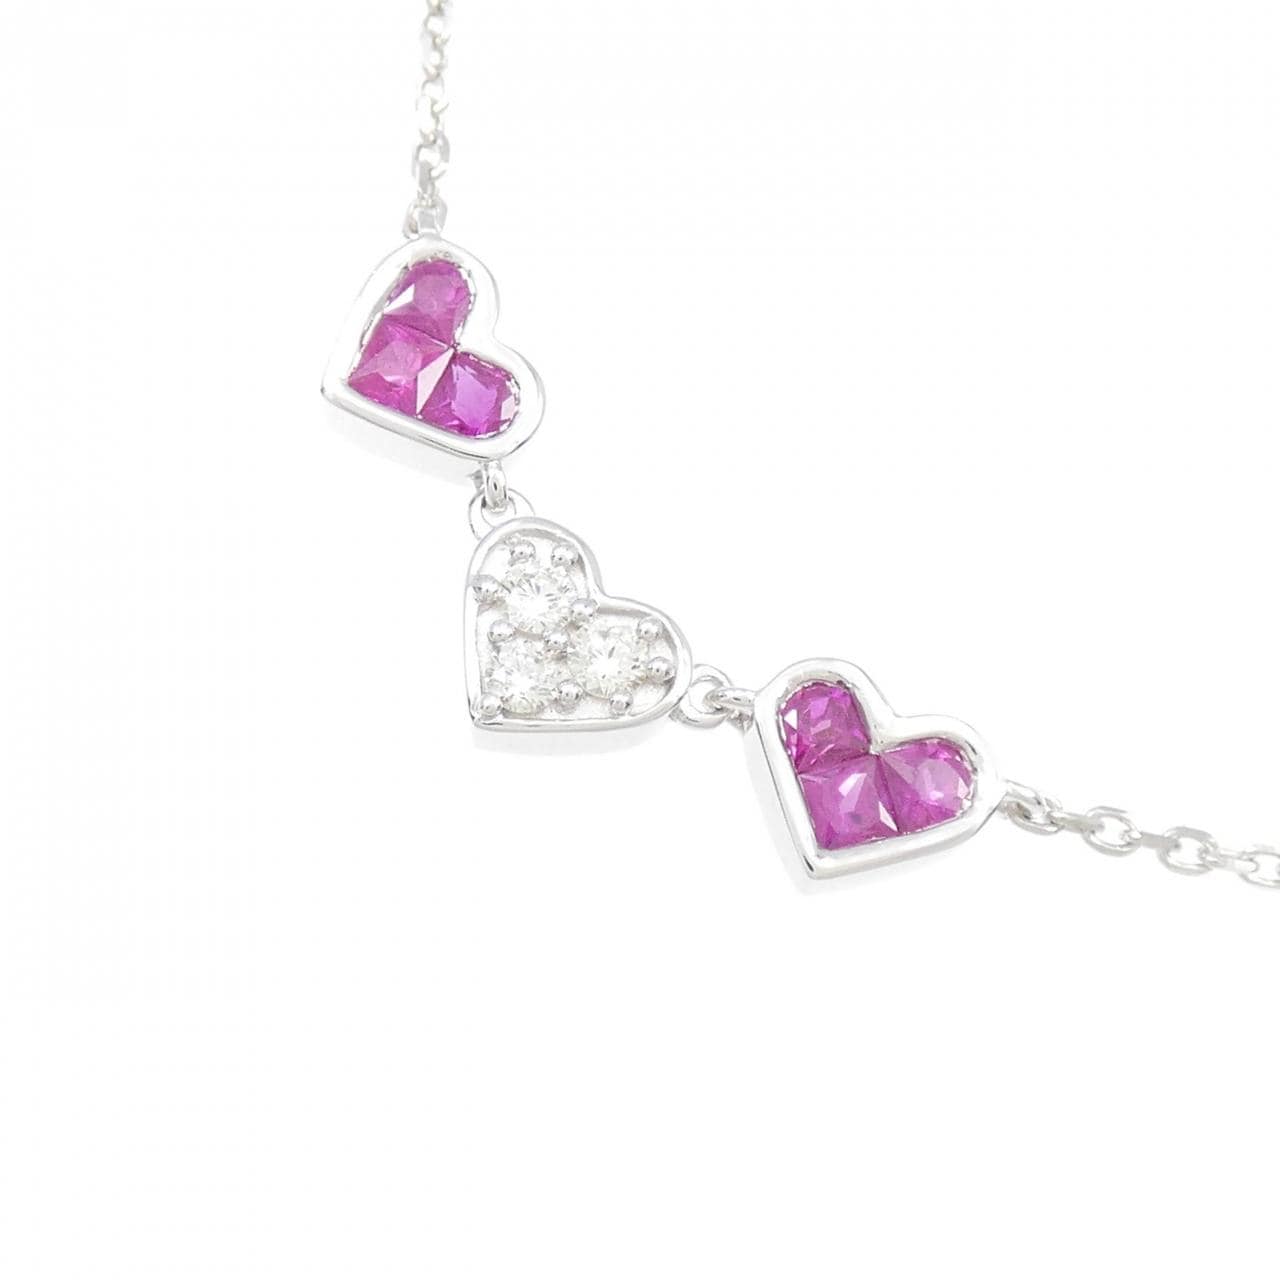 K18WG heart ruby necklace